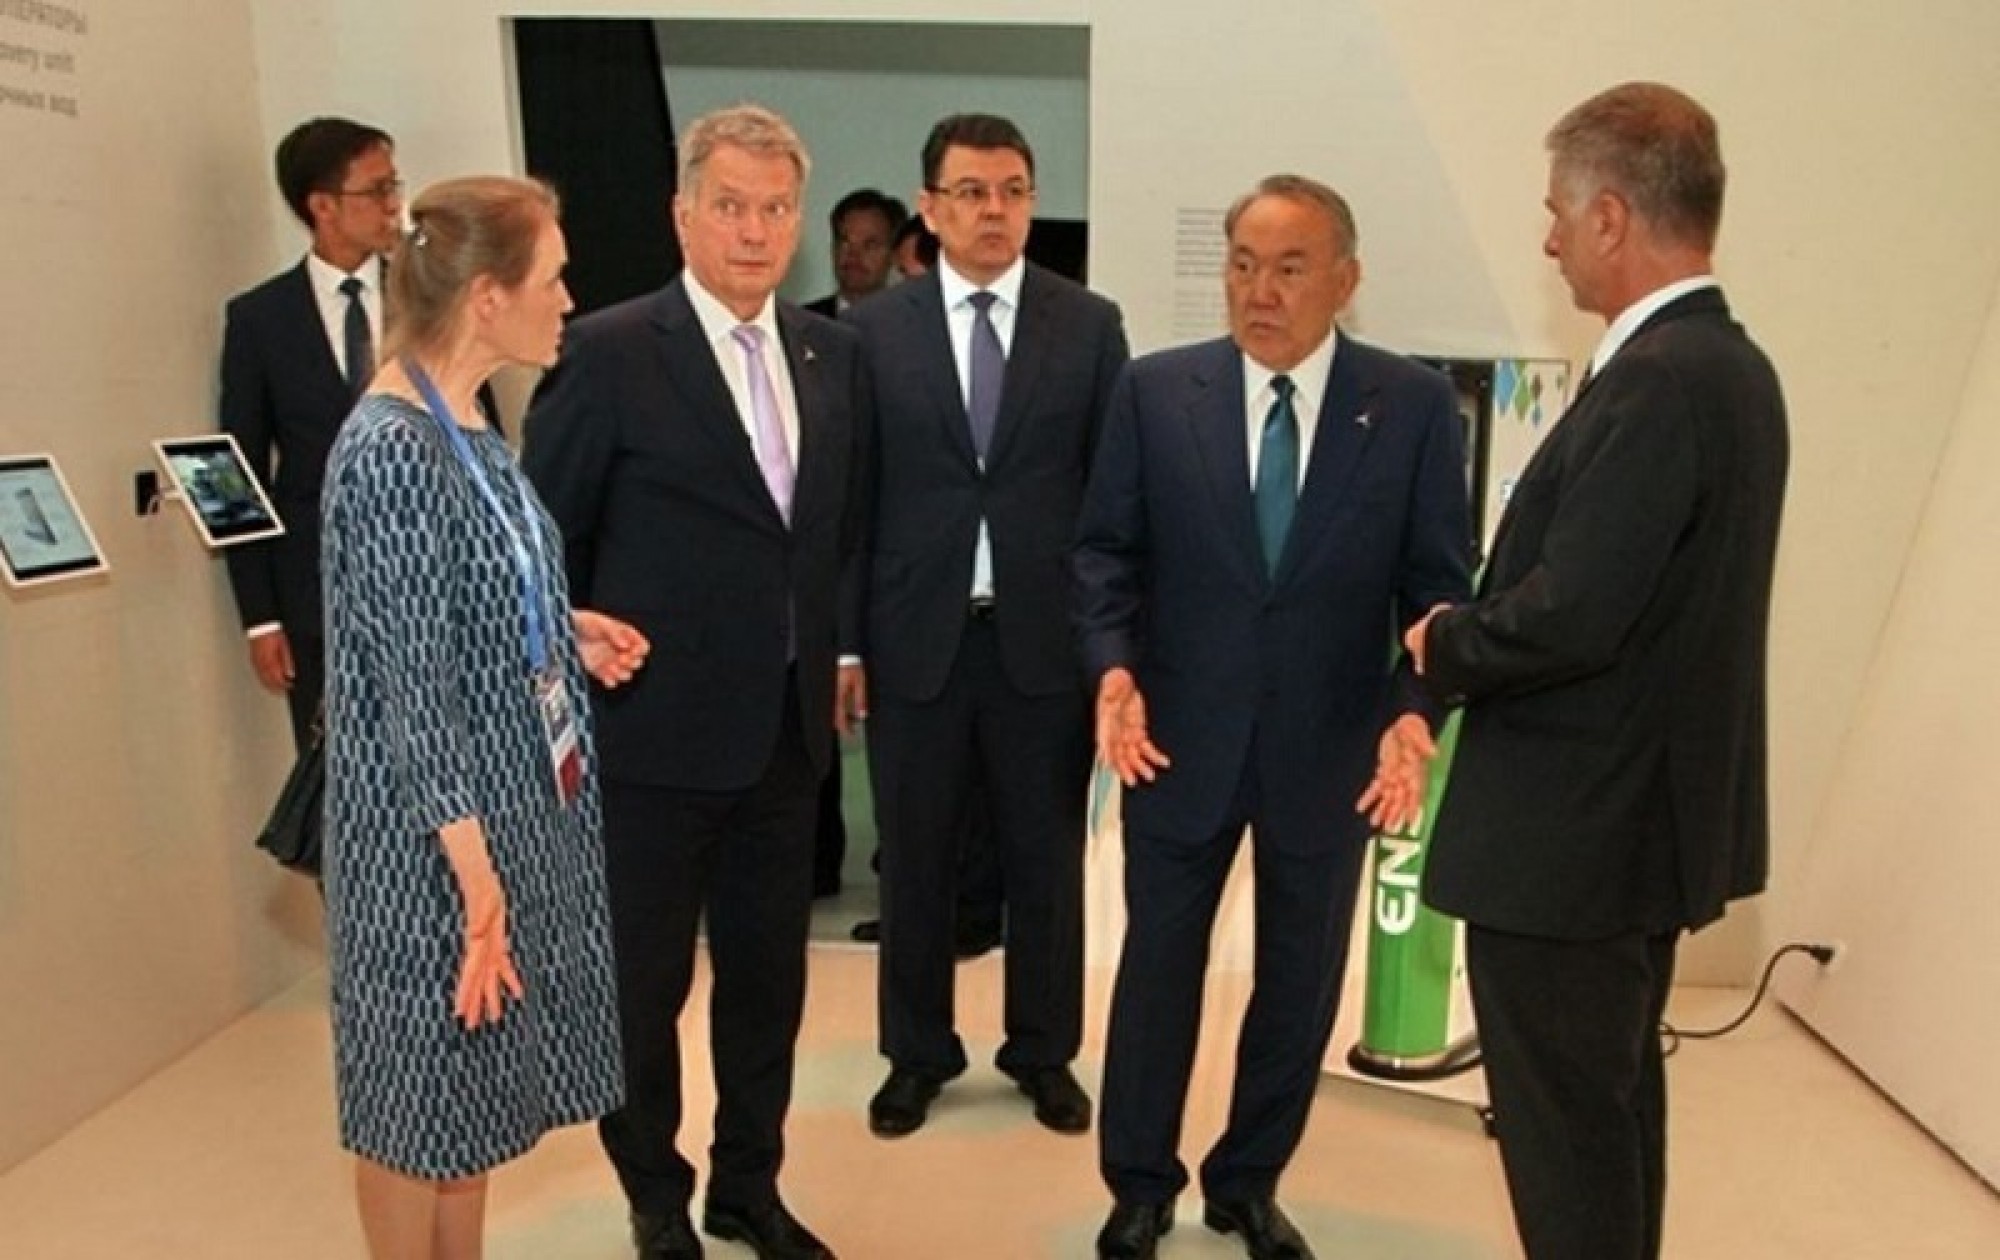 Нурсултан Назарбаев выразил заинтересованность в укреплении отношений с Финляндией в промышленности, медицине и некоторых других сферах